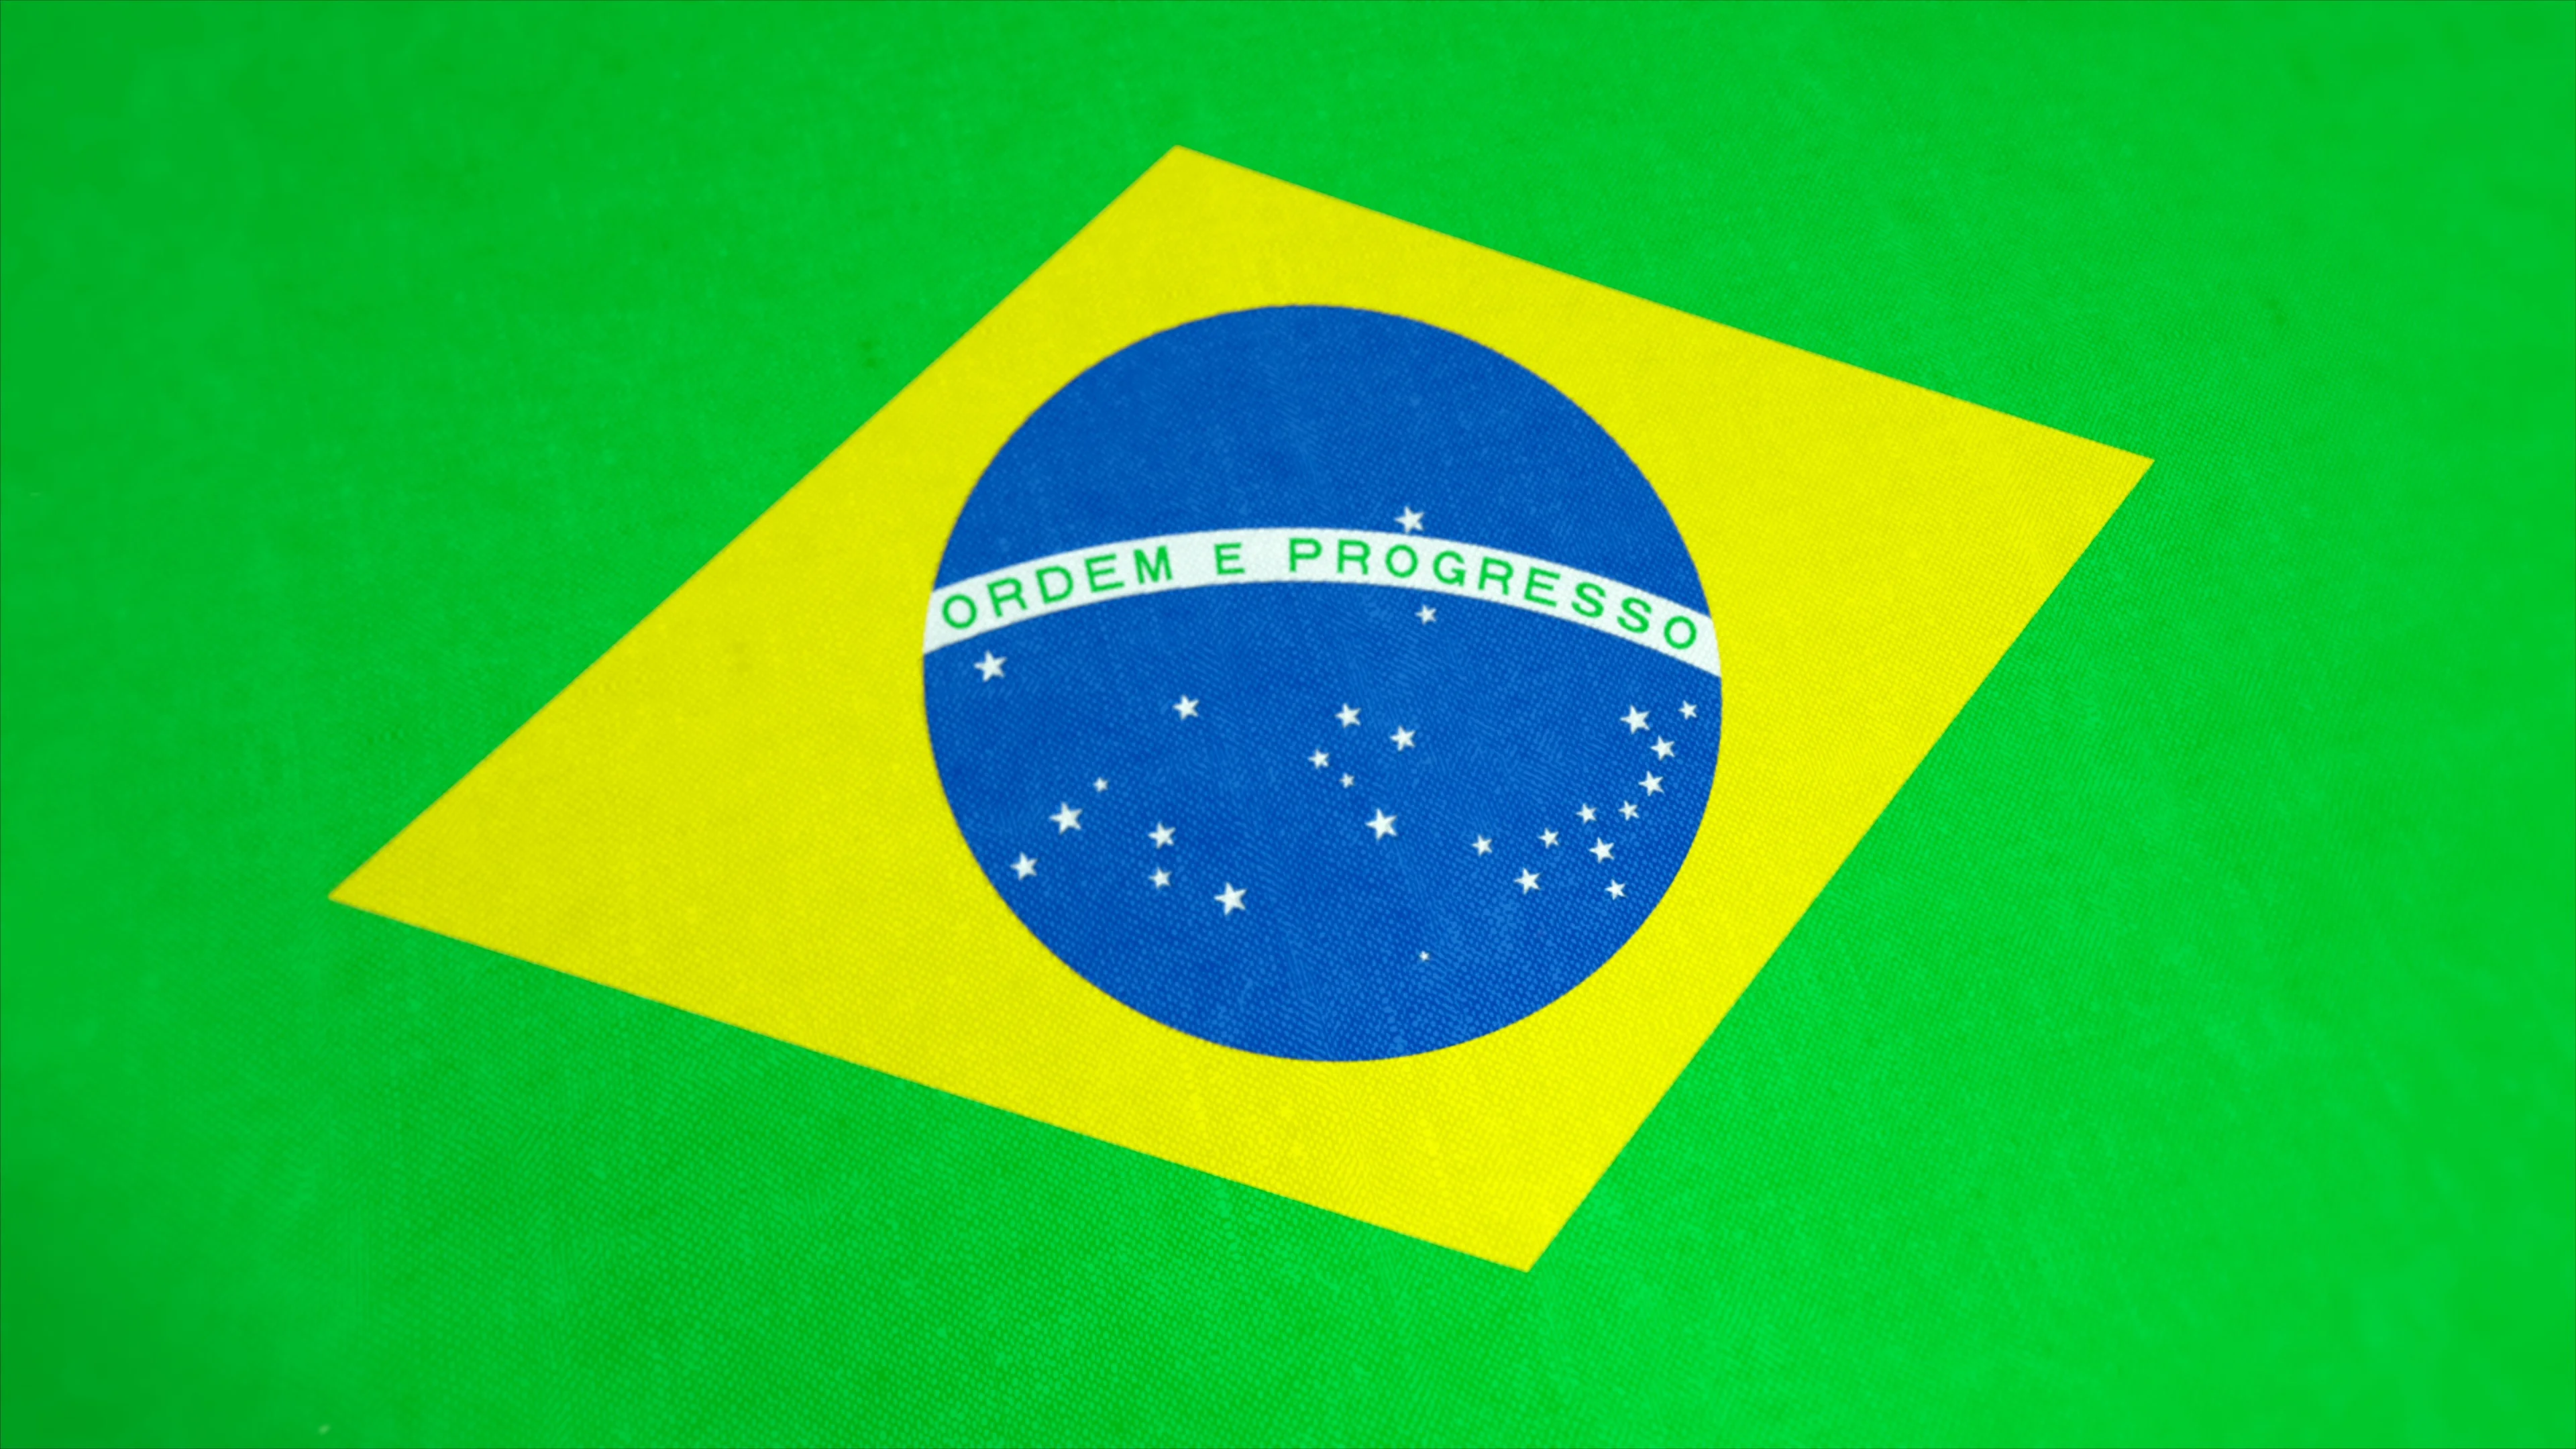 https://images.pond5.com/national-flag-brazil-windy-brasil-footage-087612336_prevstill.jpeg